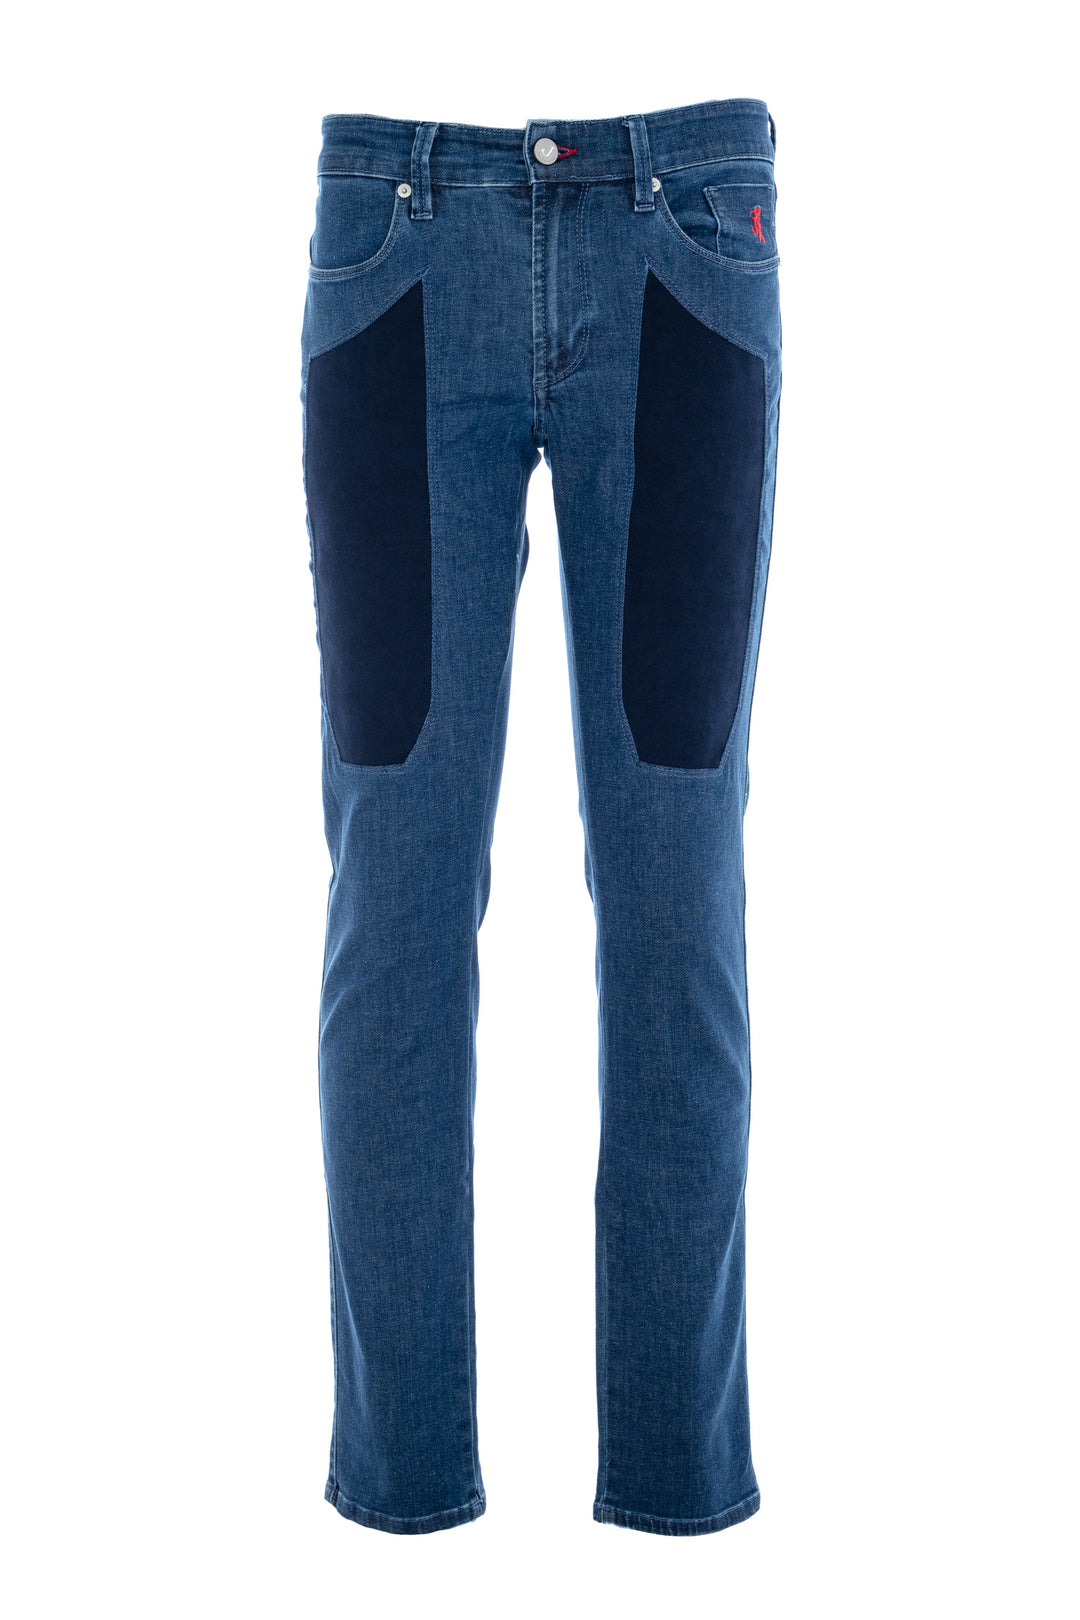 JECKERSON Jeans cinque tasche in denim stretch Tri-Blend con toppe in alcantara blu scuro - Mancinelli 1954